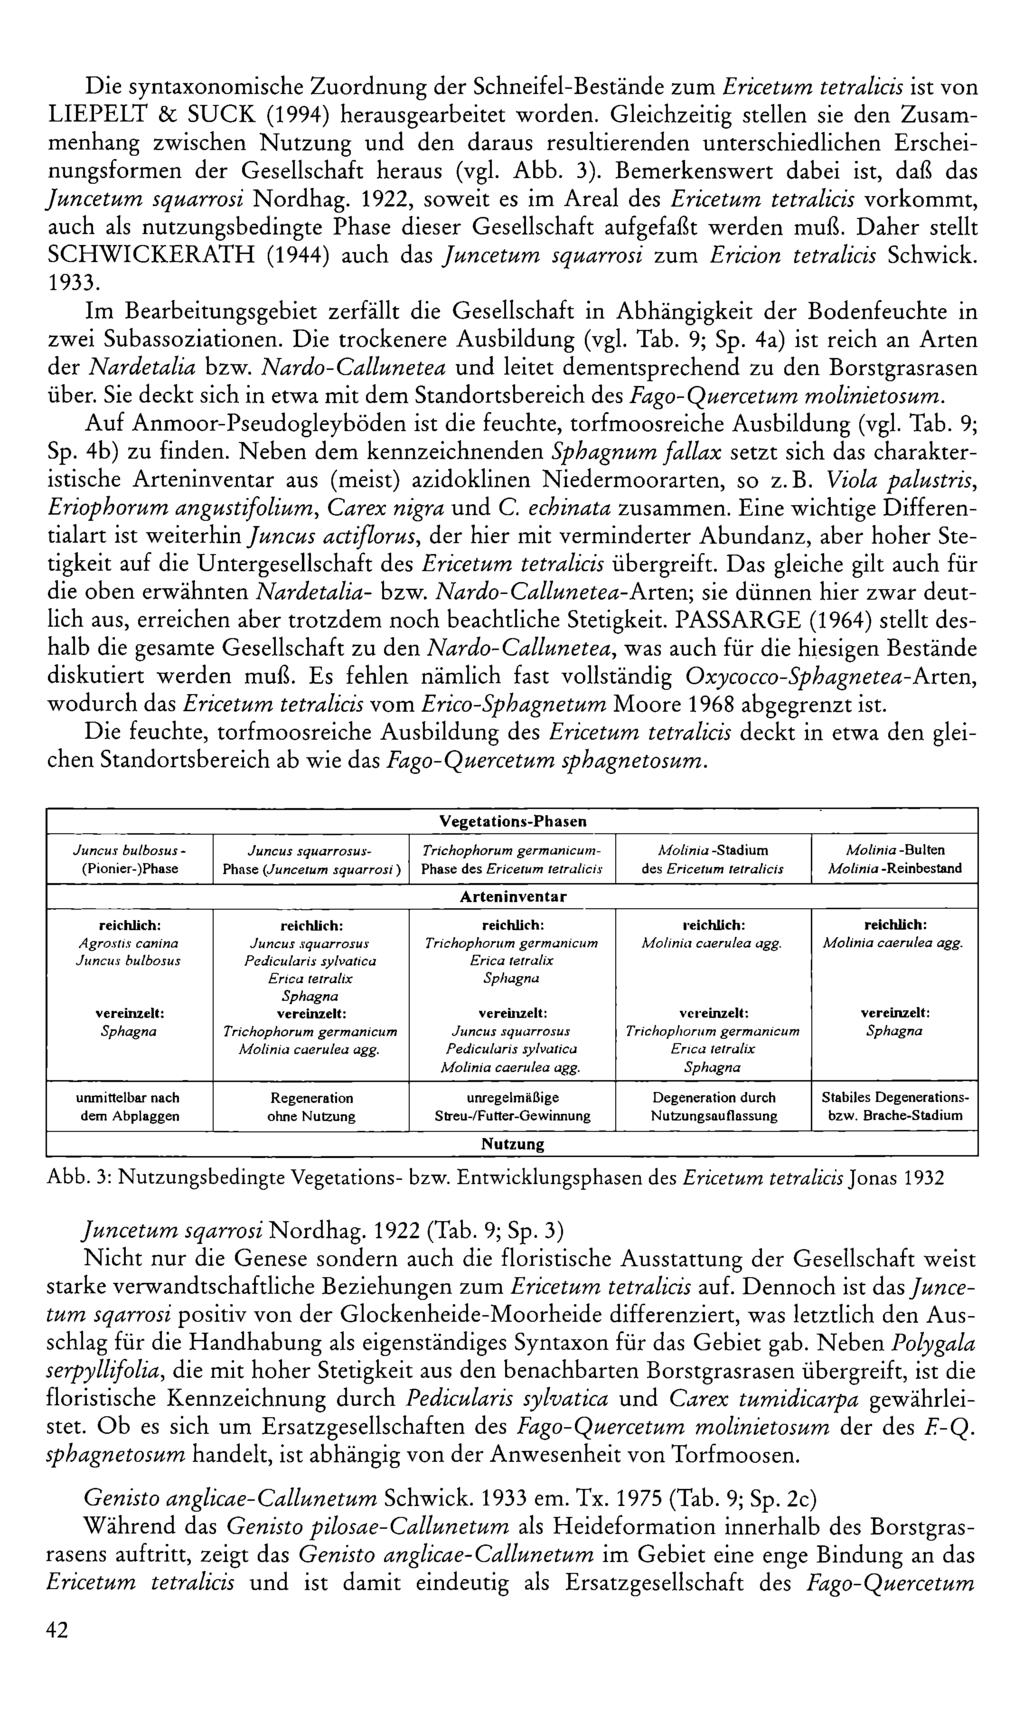 Die syntaxonomische Zuordnung der Schneifel-Bestände zum Ericetum tetralicis ist von LIEPELT & SUCK (994) herausgearbeitet worden.